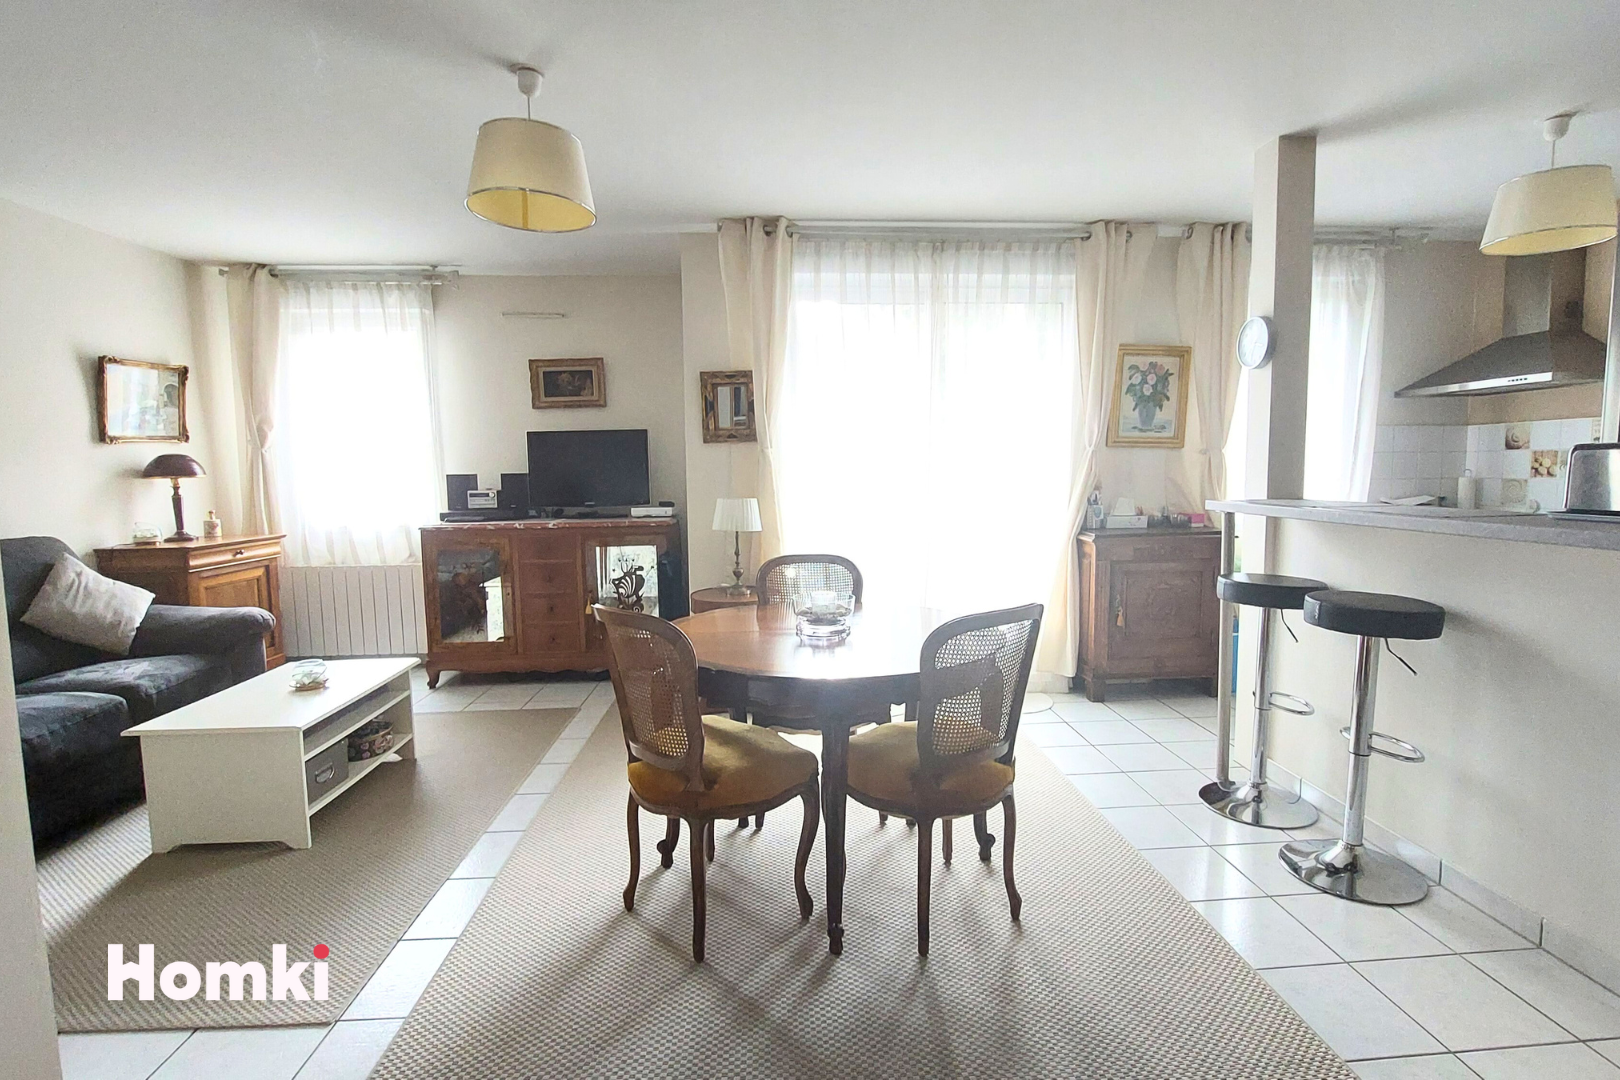 Homki - Vente Appartement  de 65.03 m² à Nantes 44300